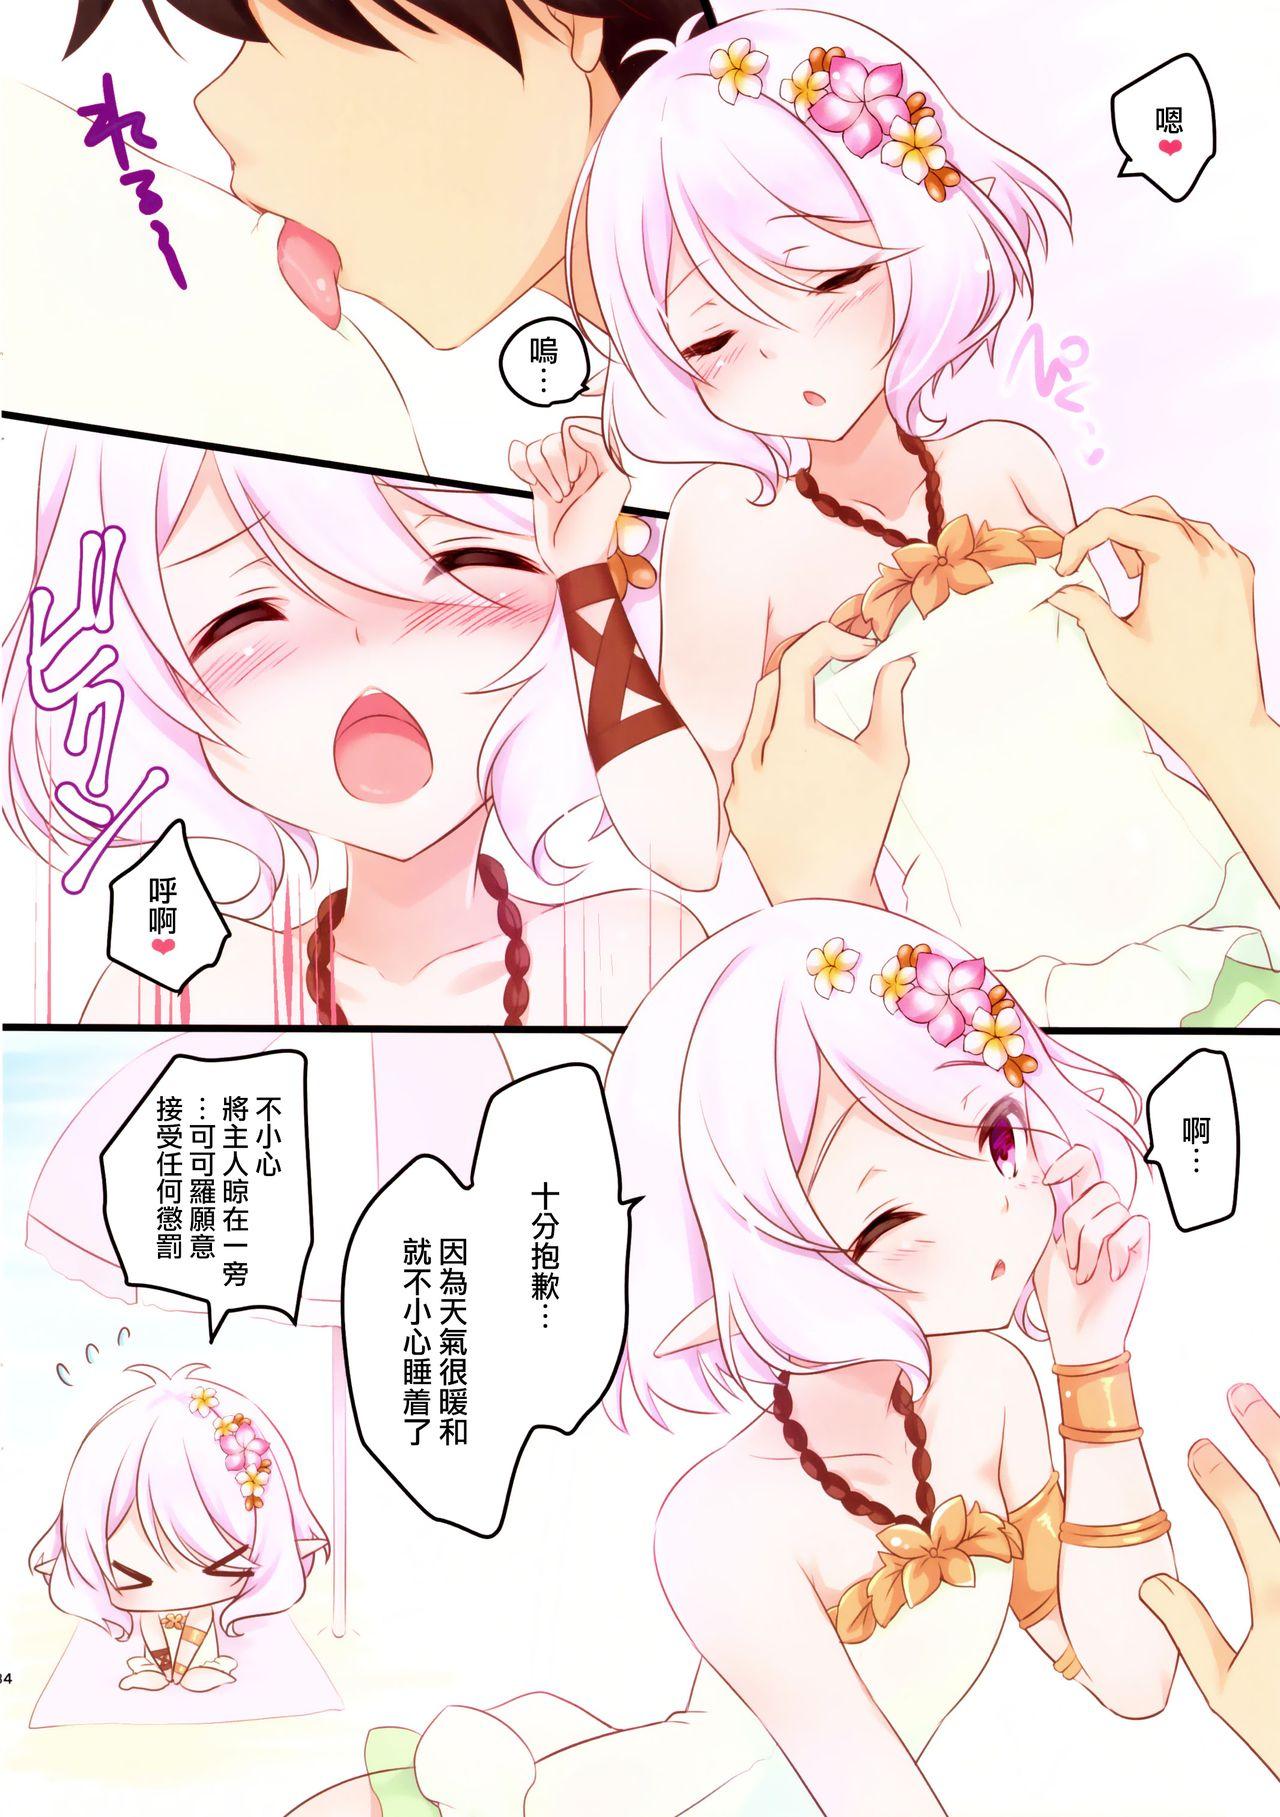 Mouth Kokkoro-tan to Natsuyasumi - Princess connect Fingering - Page 5